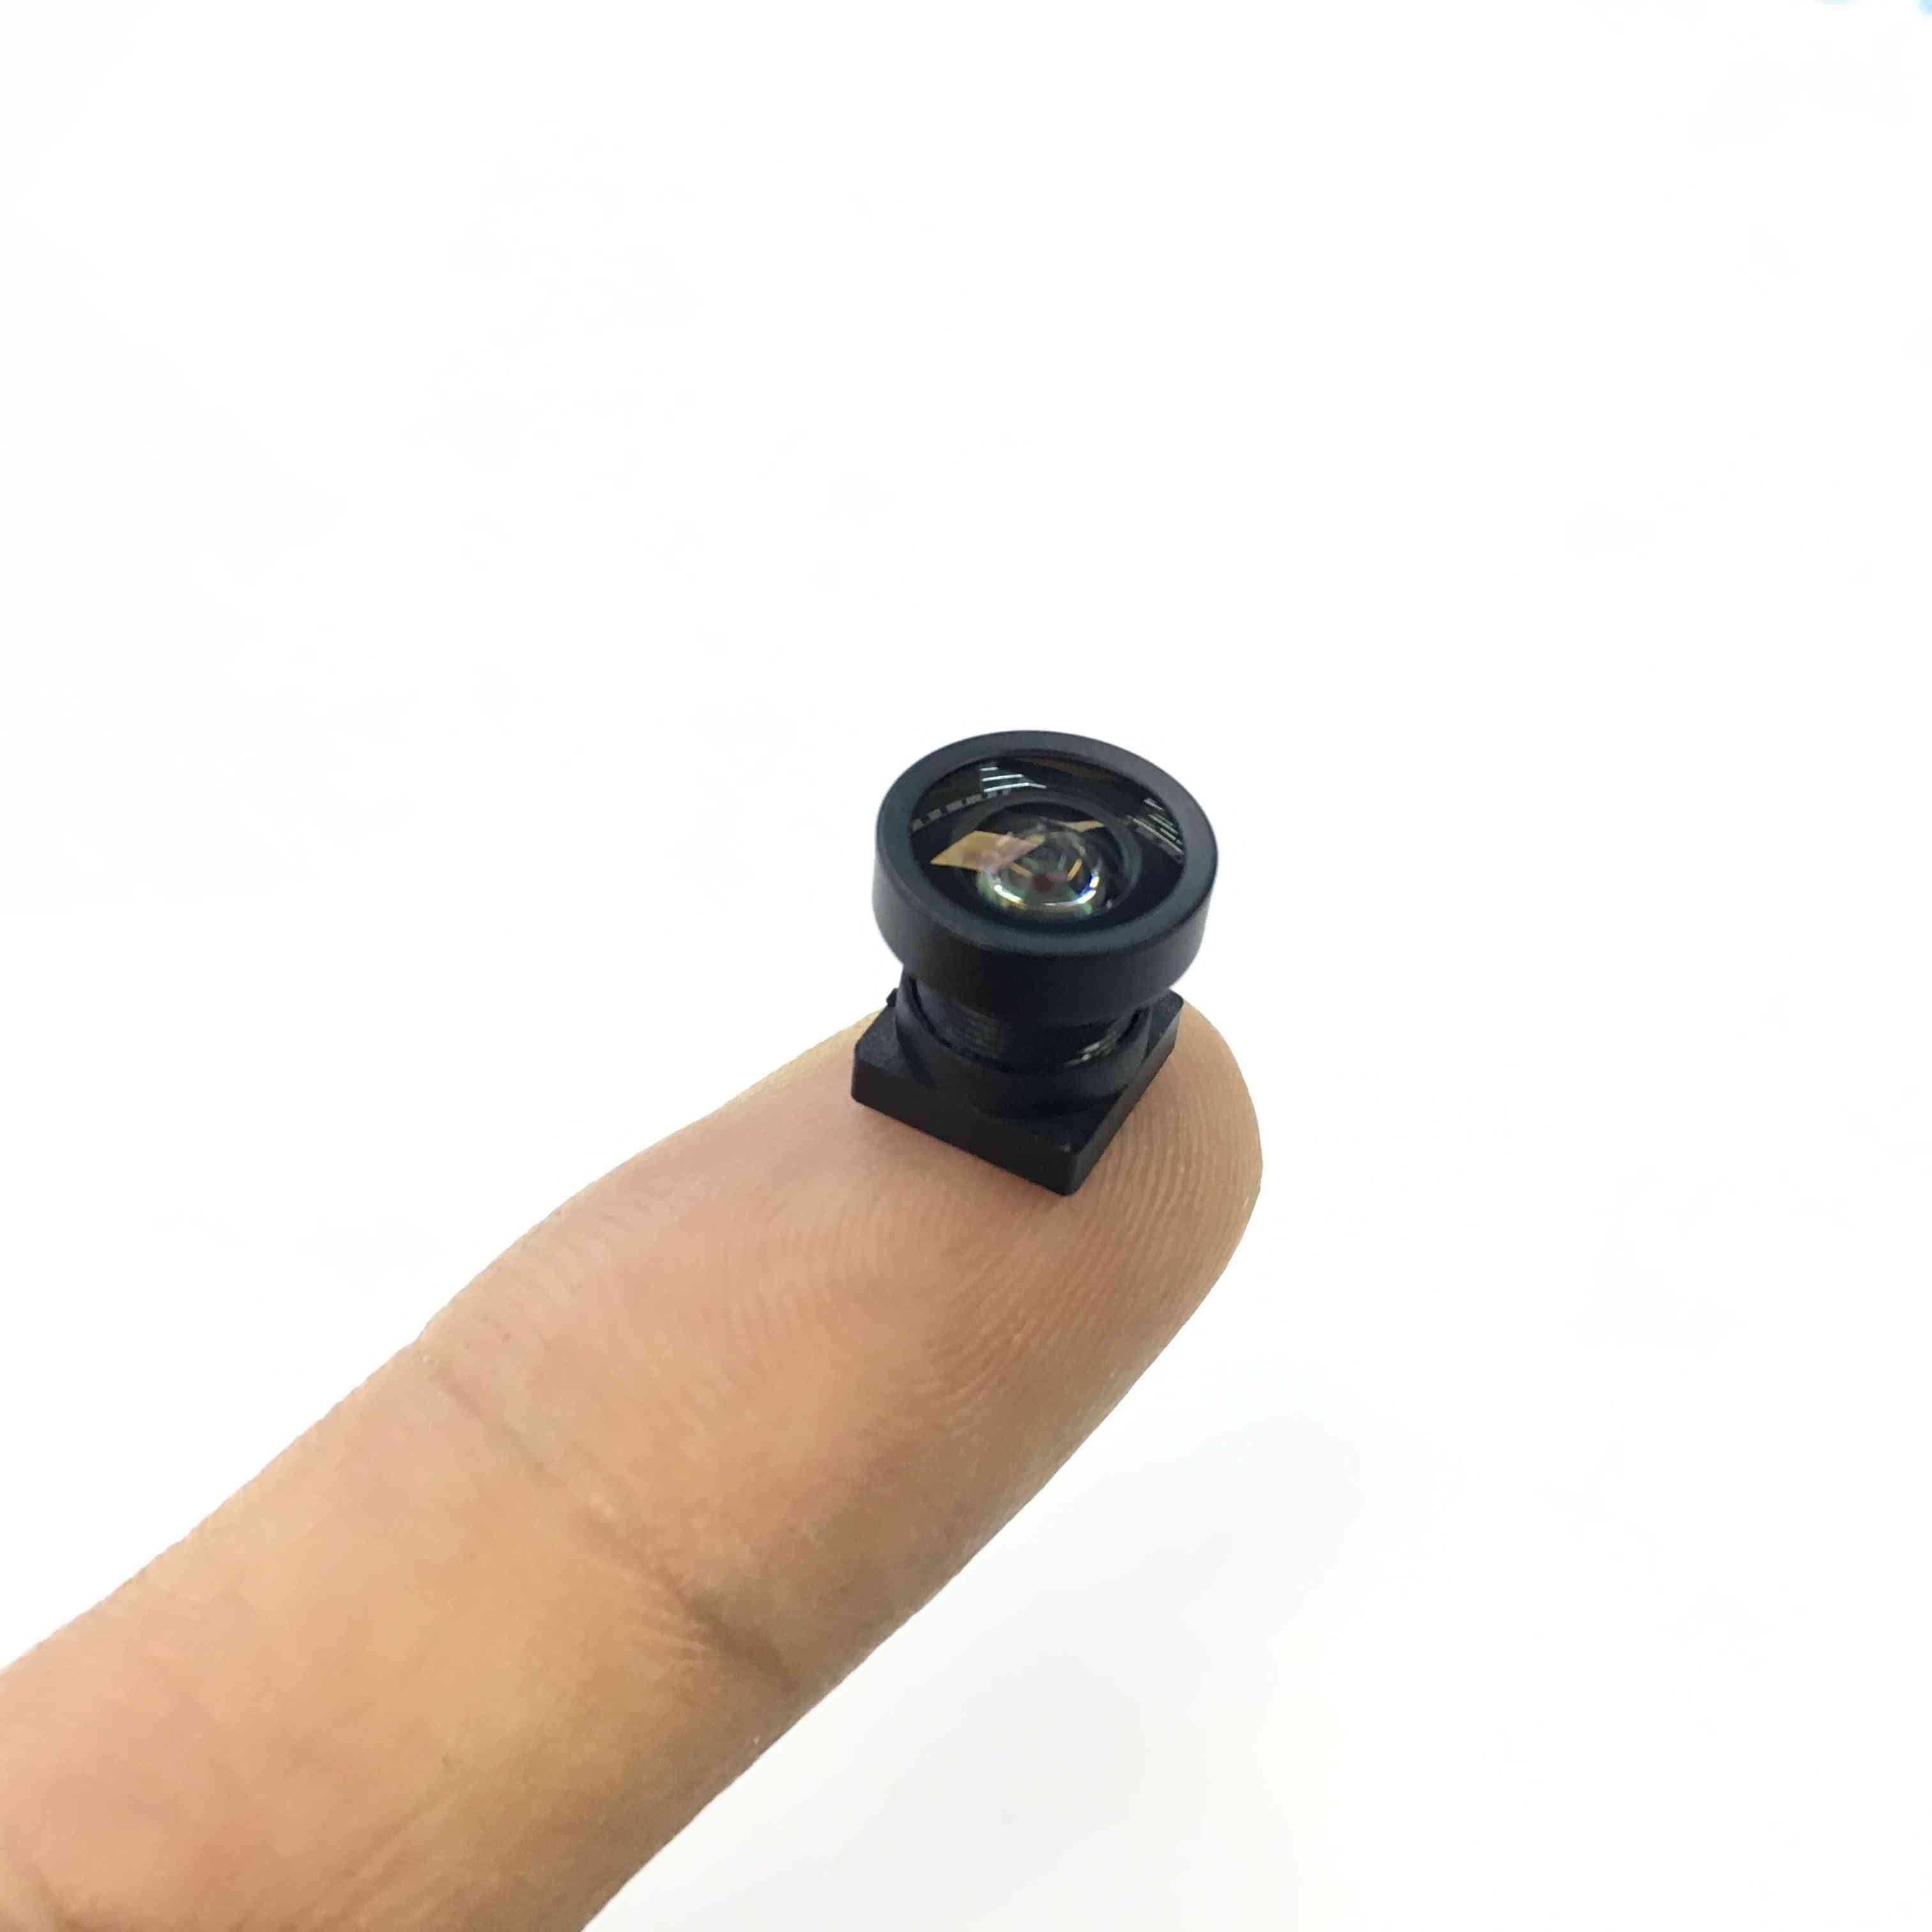 Hs-2k-65 1.7mm Cctv Mini Lens, 170 Degrees Wide